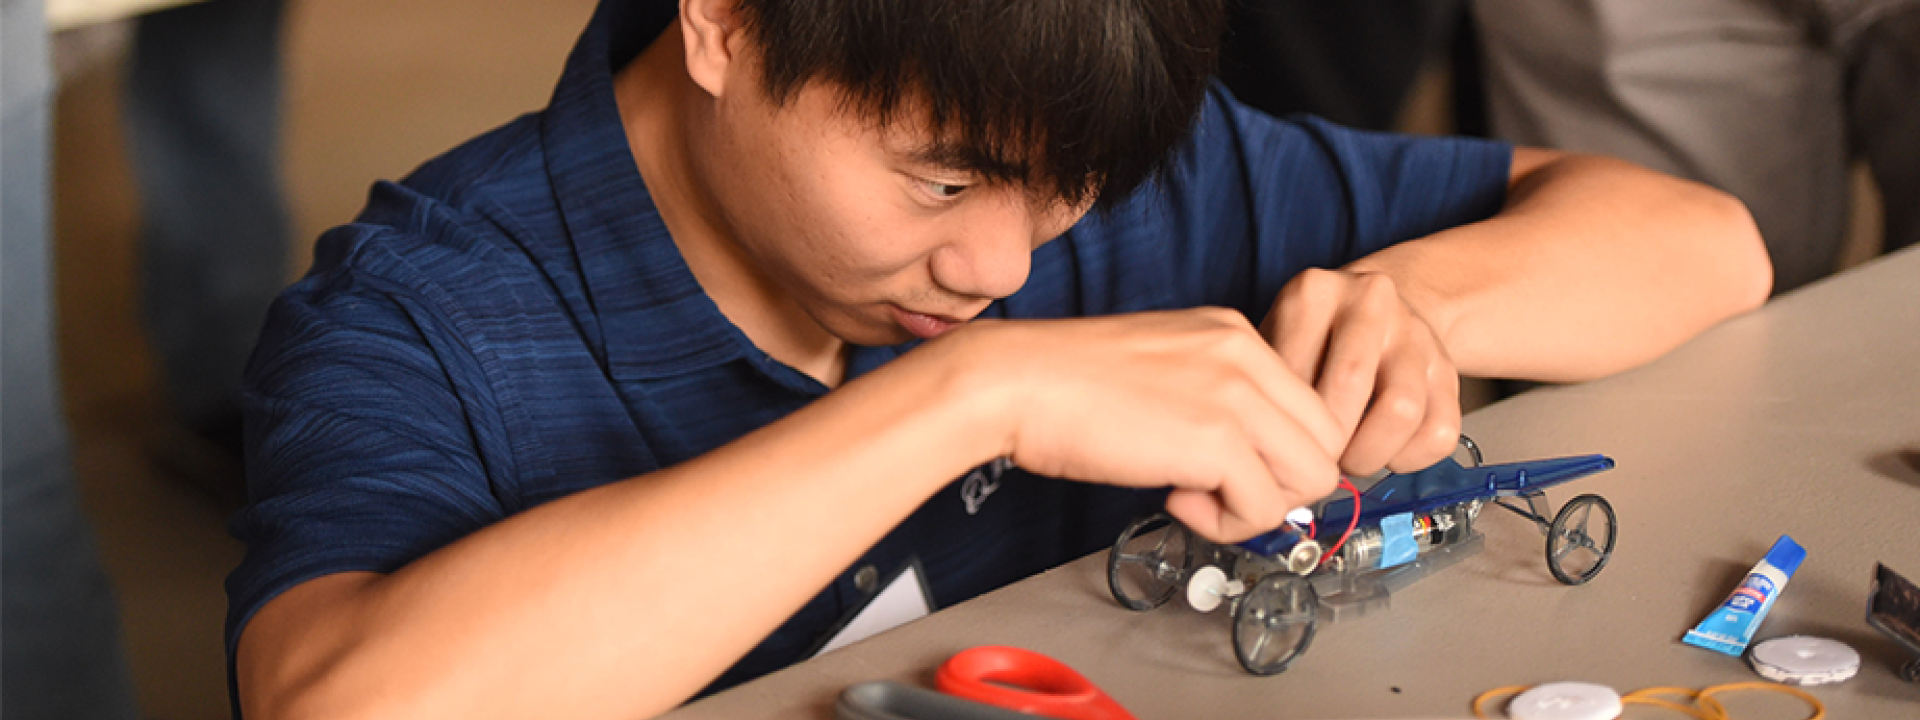 boy focuses on building a car kit